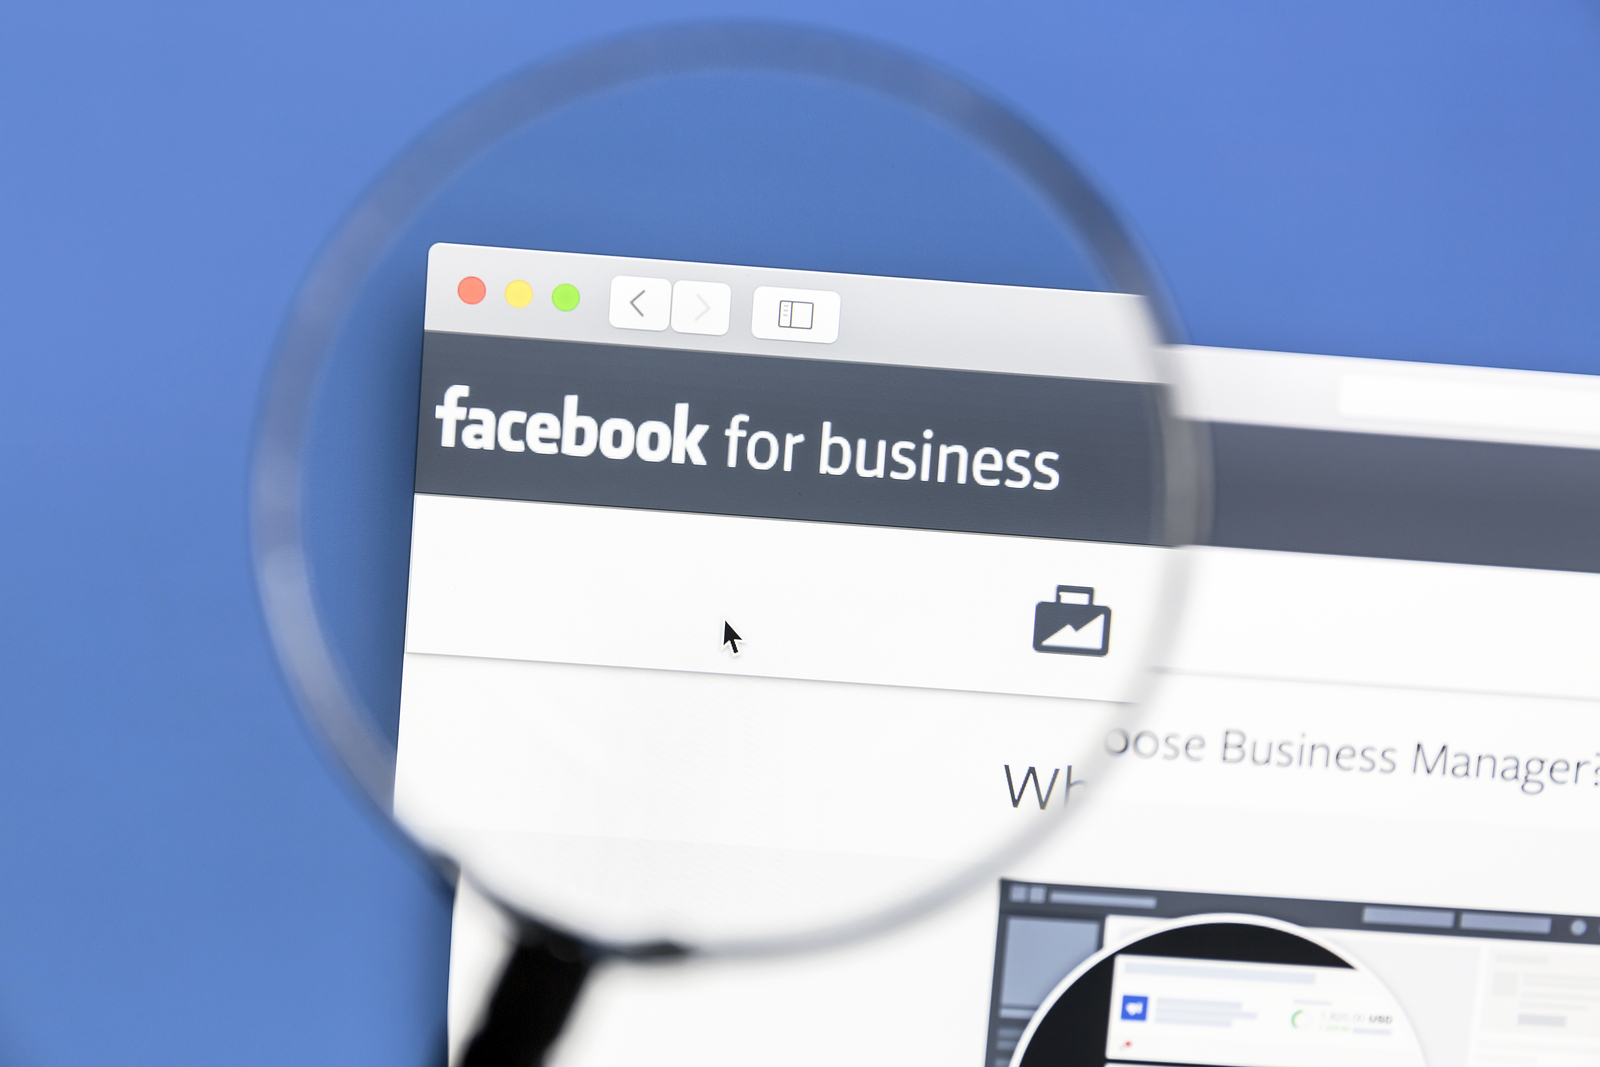 Come le pagine di Facebook possono iniziare ad attrarre nuovi like più velocemente